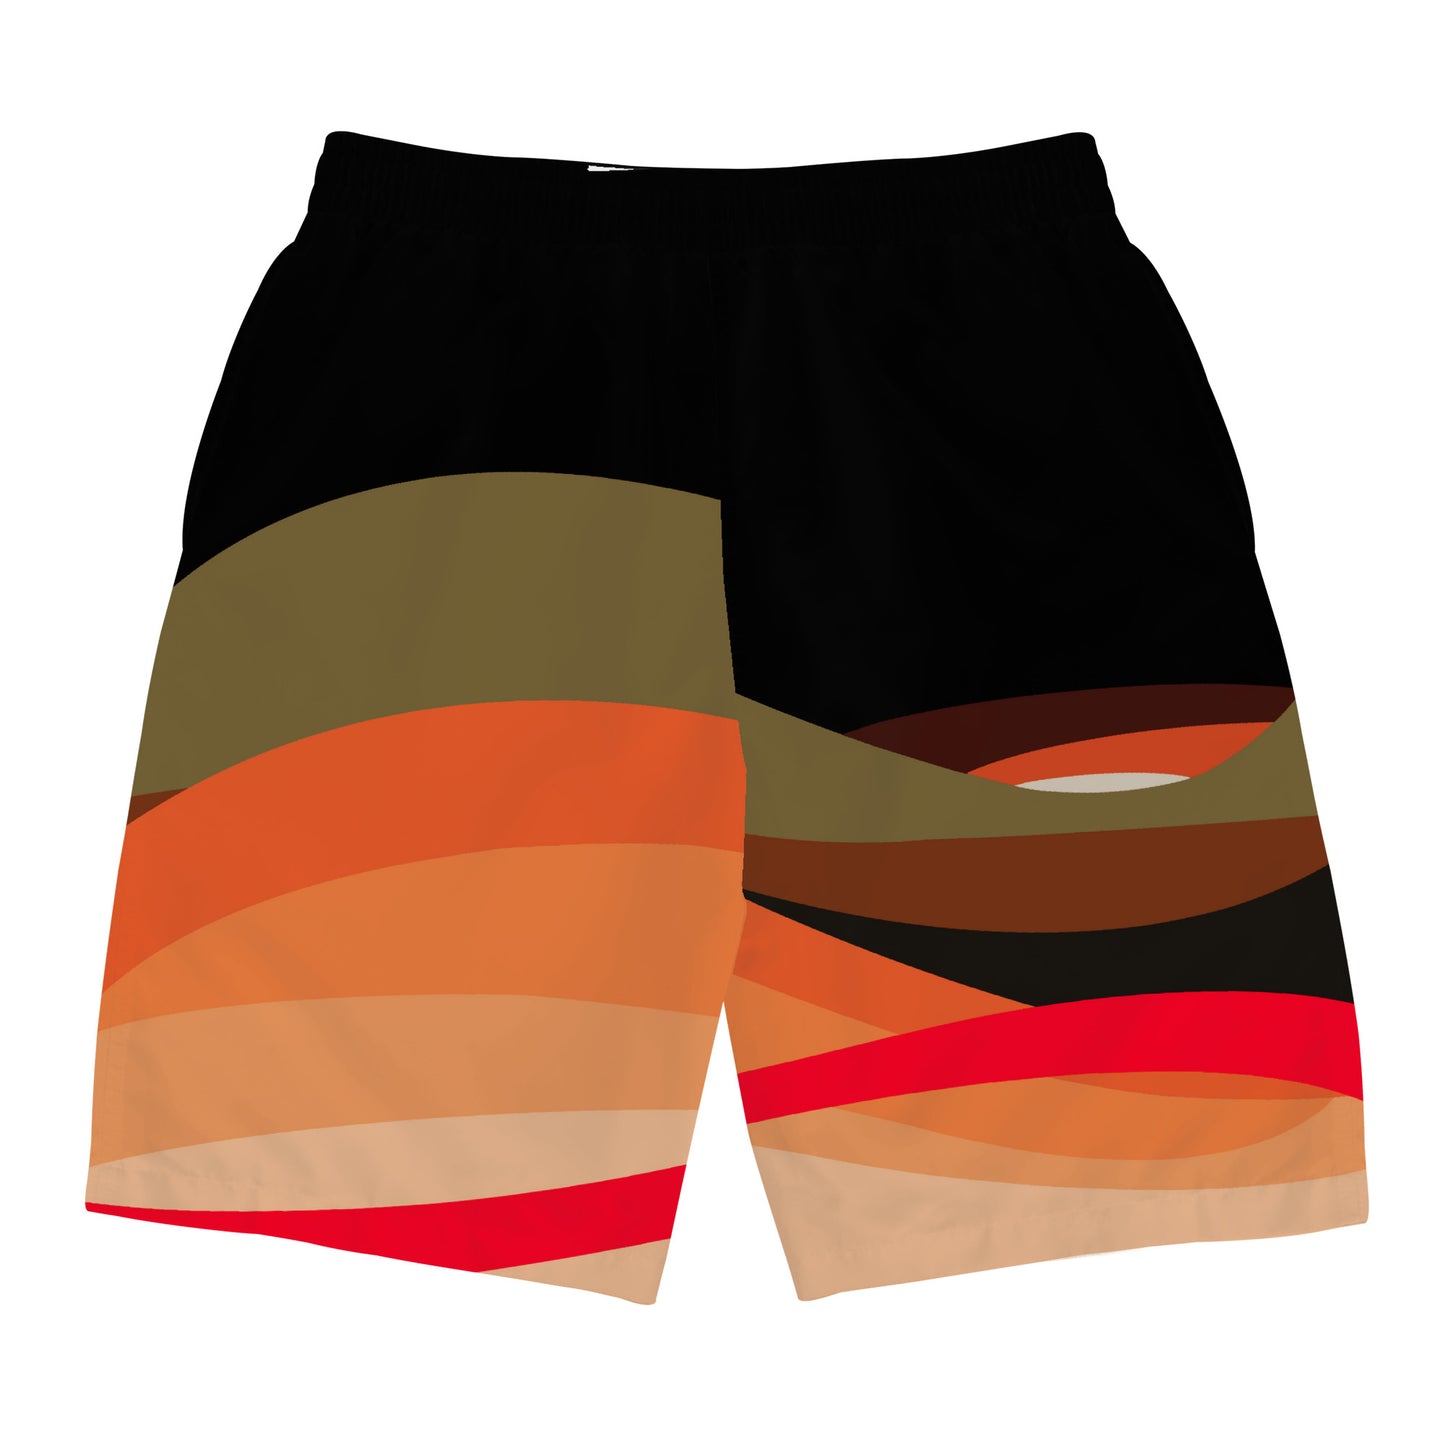 Wavy 111 Shorts (Heat Wave)